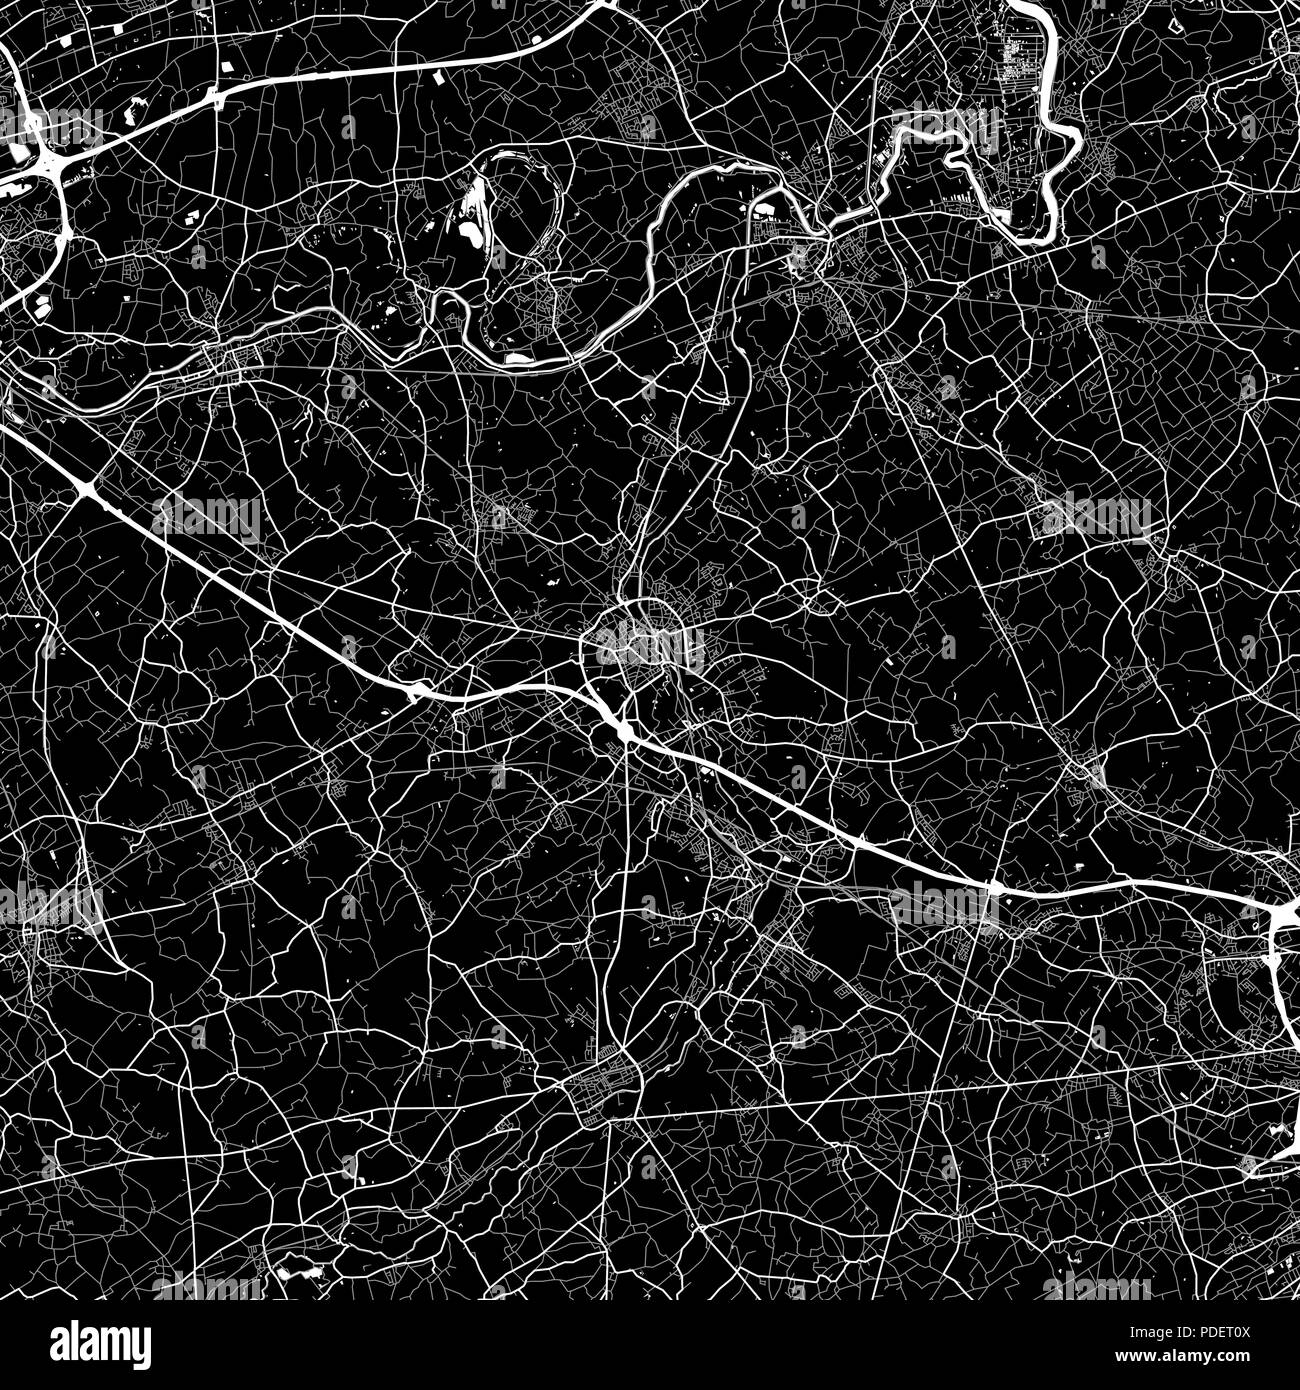 Carte de la région d'Alost, Belgique. Fond sombre version pour l'infographie et de marketing. Cette carte d'Alost, Région flamande, contient les rues, les voies d'une Illustration de Vecteur